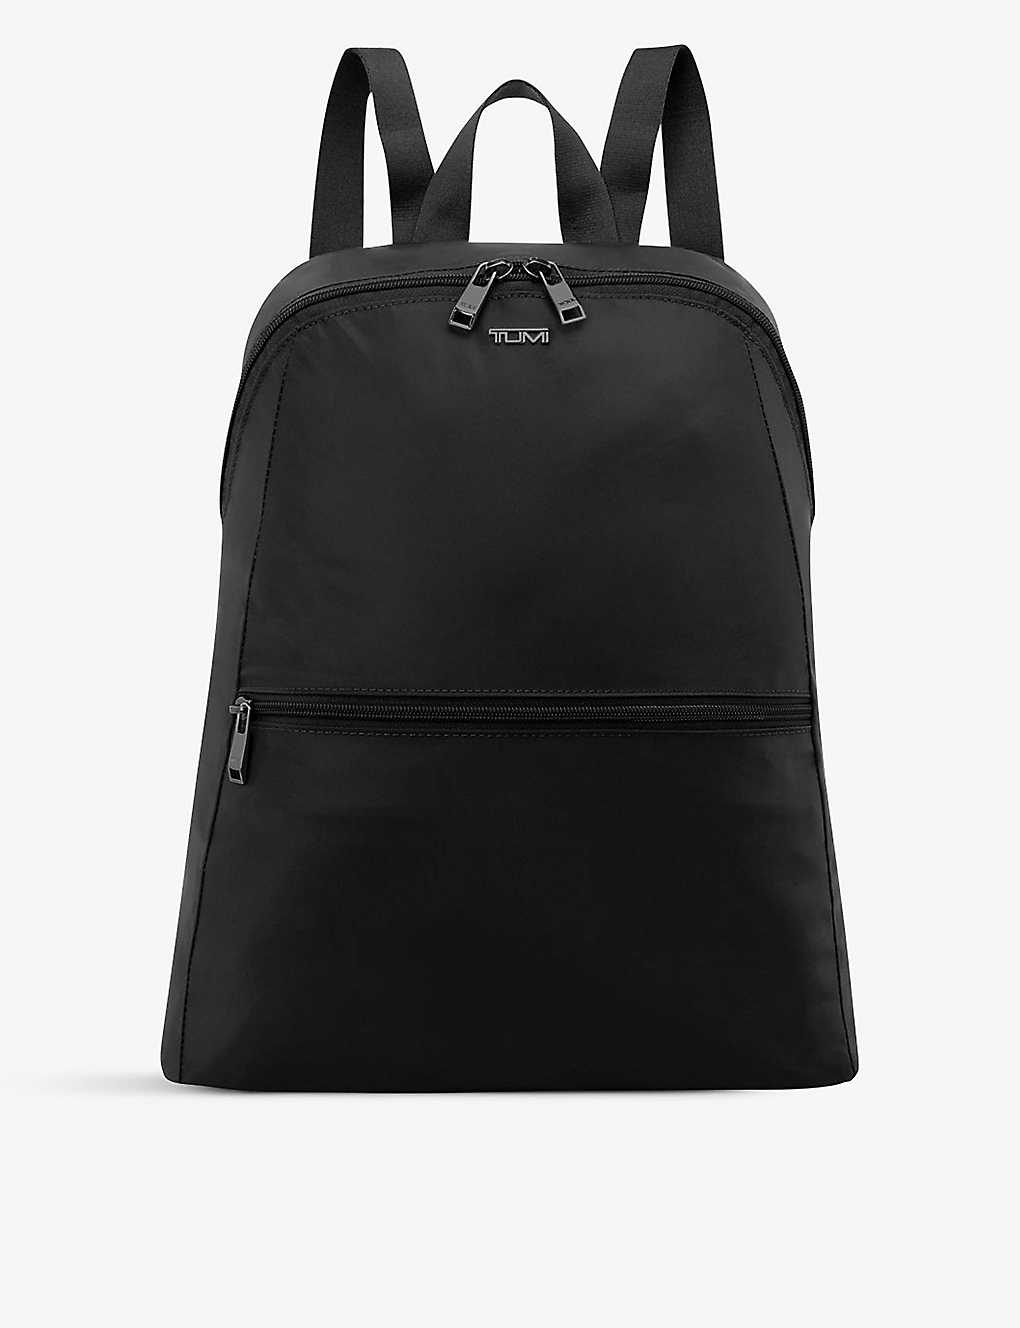 Tumi Just In Case Double-zip Branded Nylon Backpack In Black/gunmetal